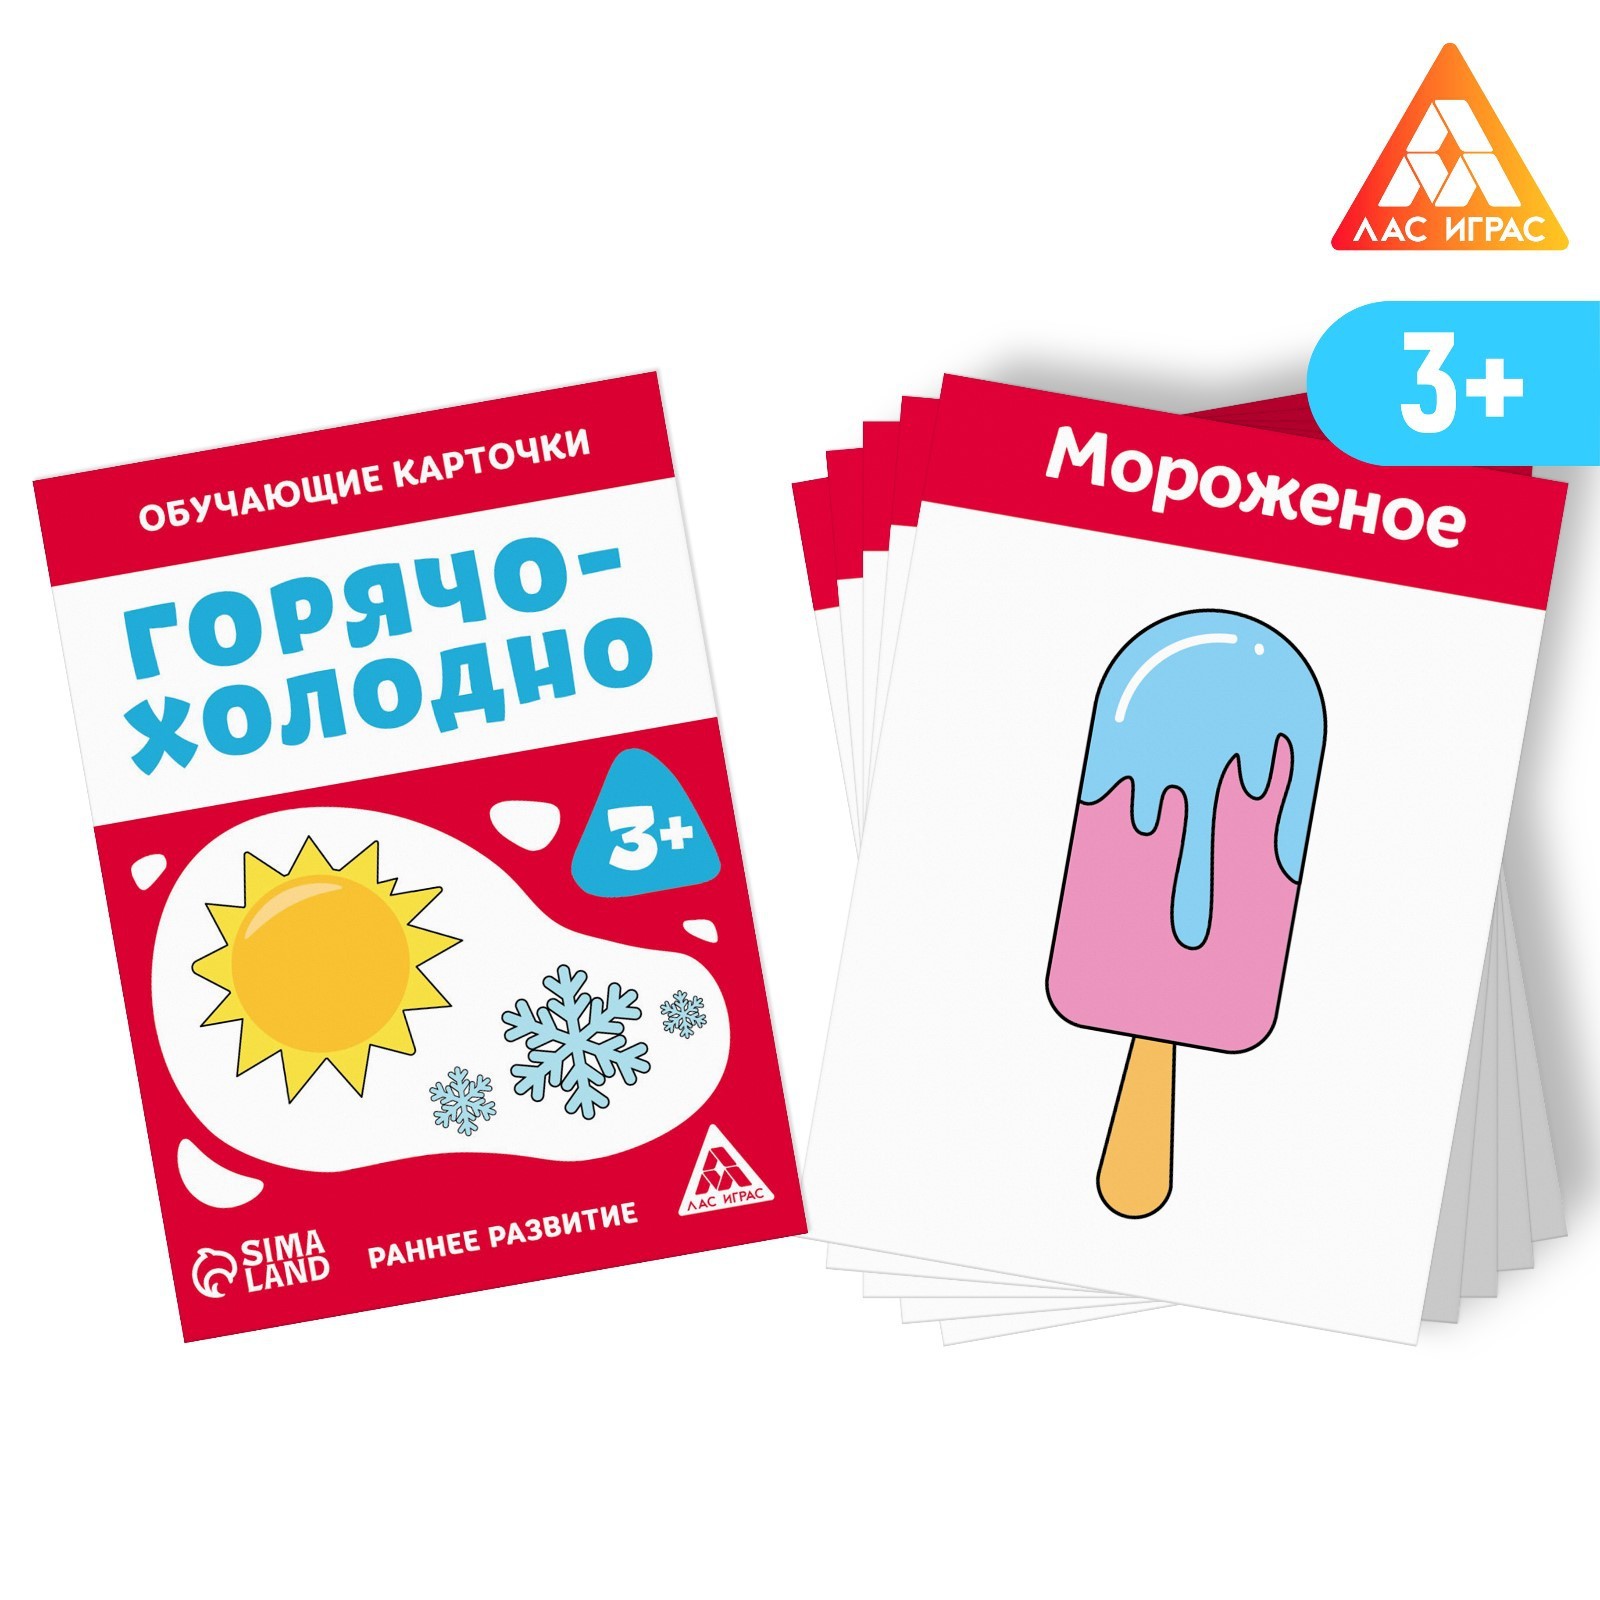 Обучающие карточки Горячо-холодно, 3+ 7100232 (Вид 1)